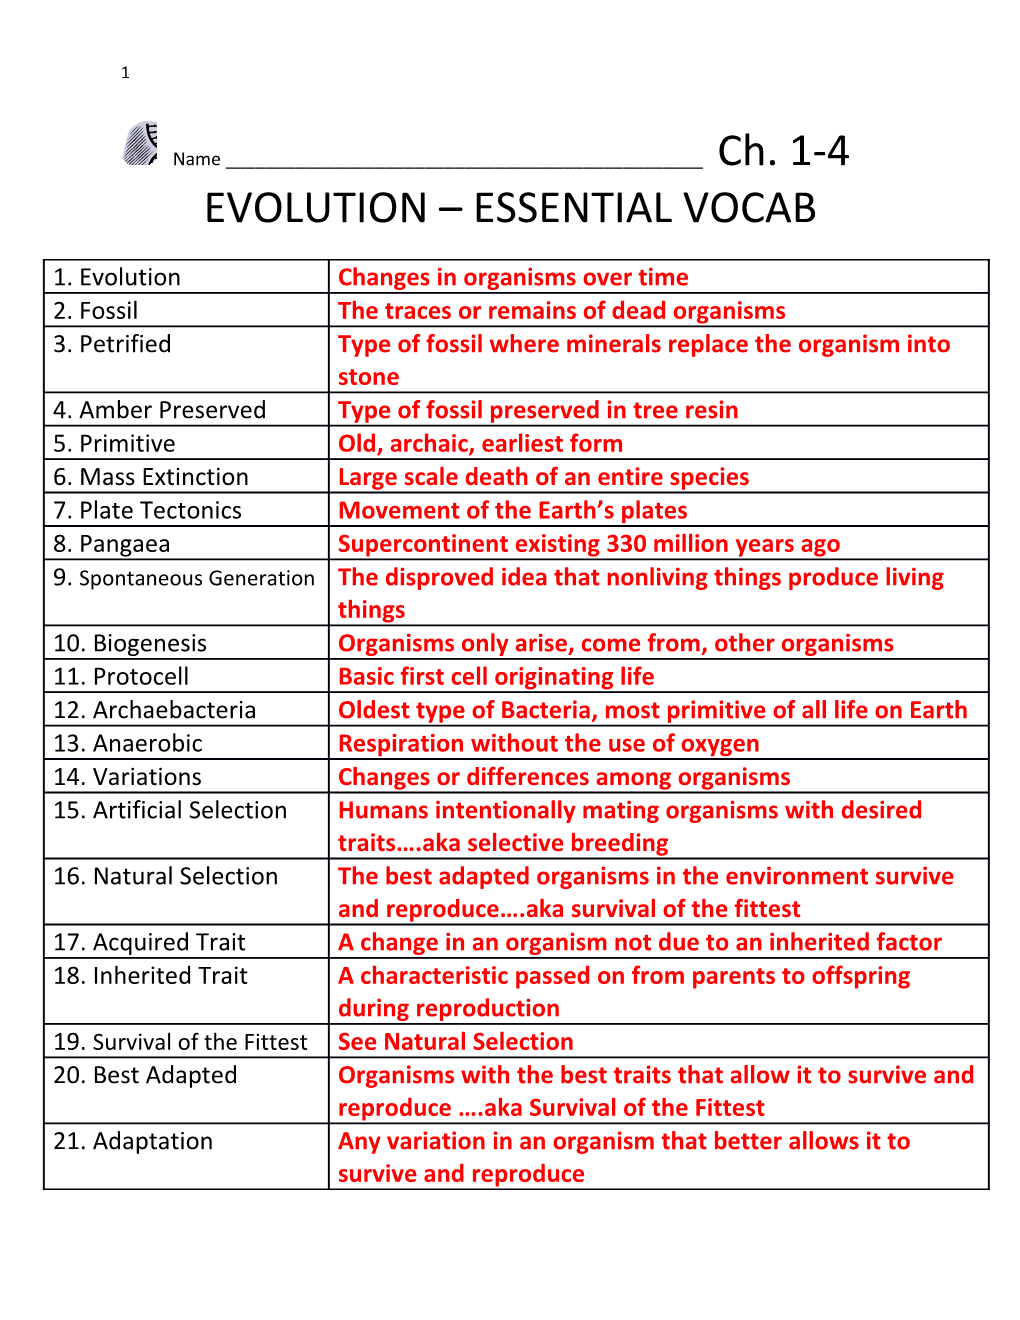 Evolution Essential Vocab